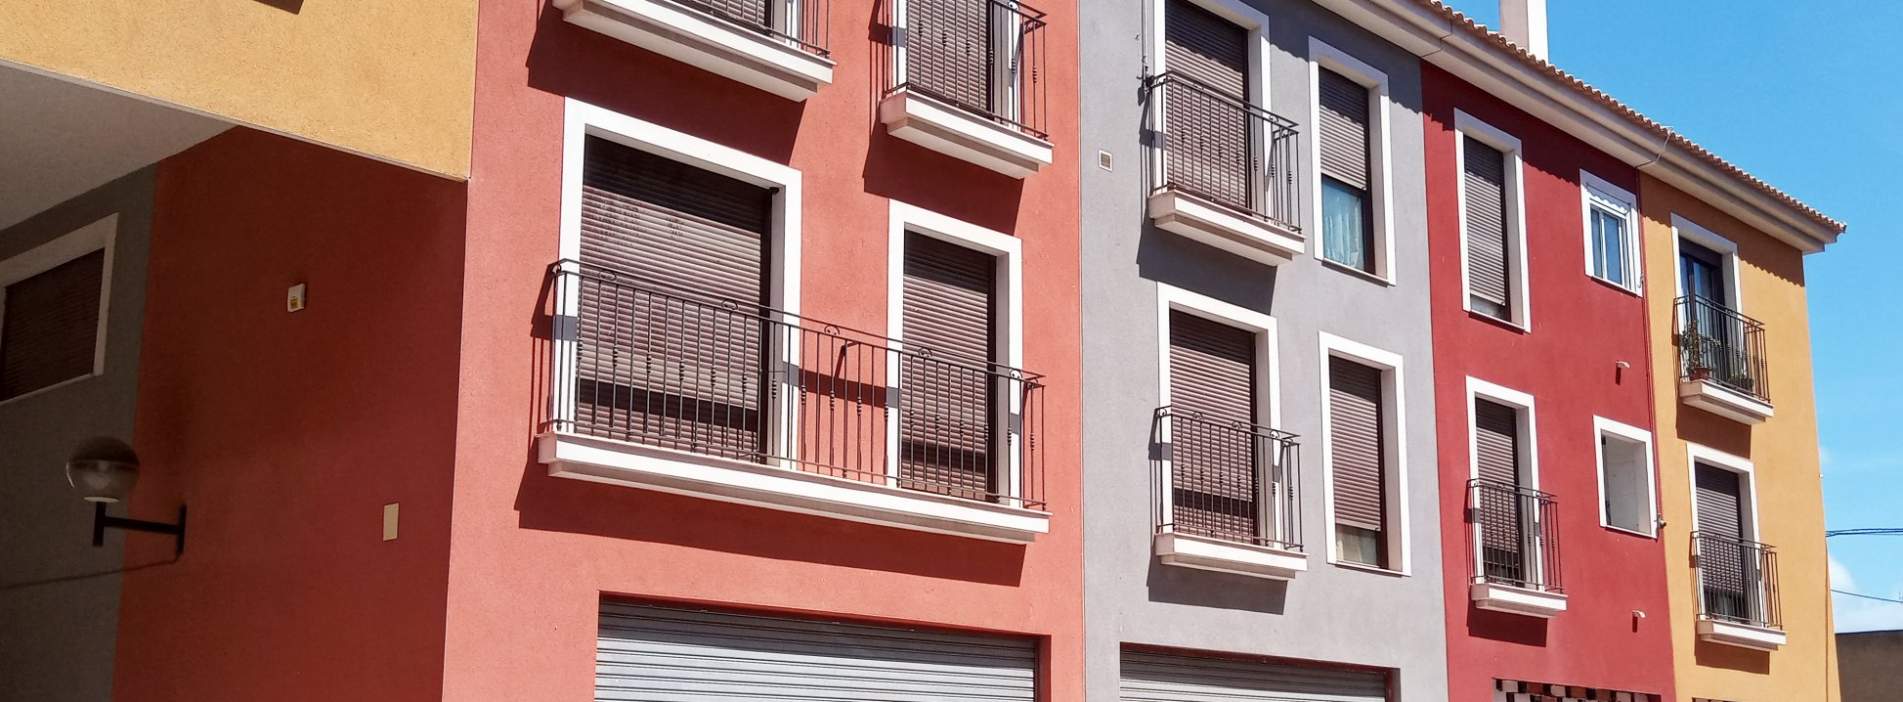 Estrena vivienda en Mutxamel, Alicante - Residencial Villena